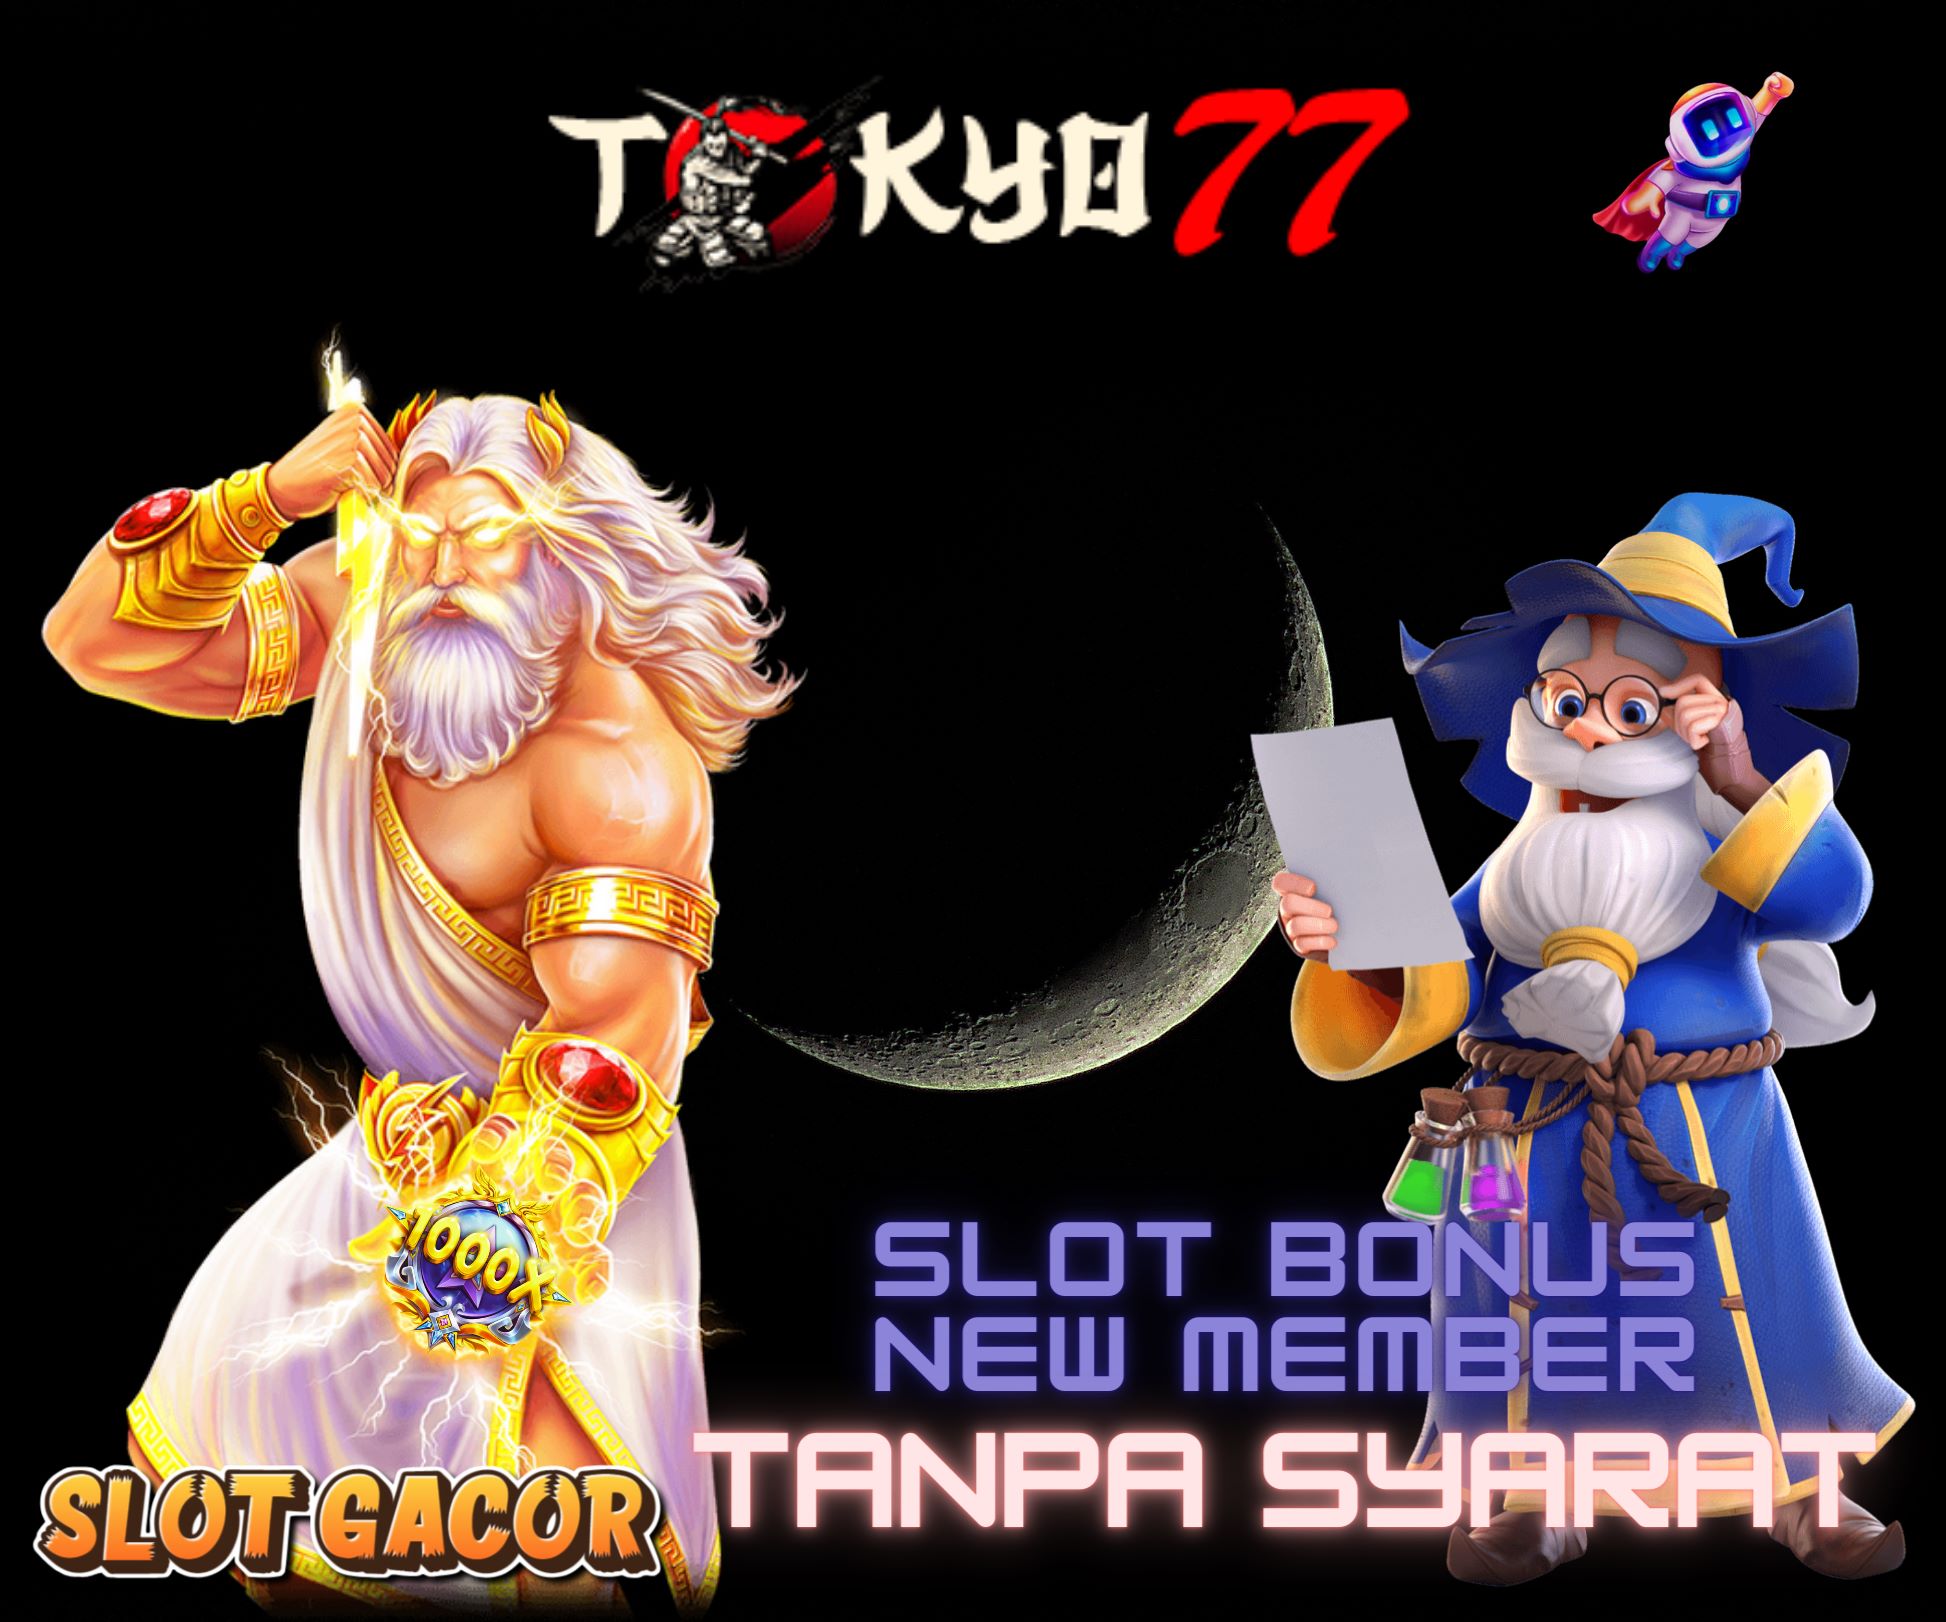 Diversity of Slot Bonus New Member on the Tokyo777 Site